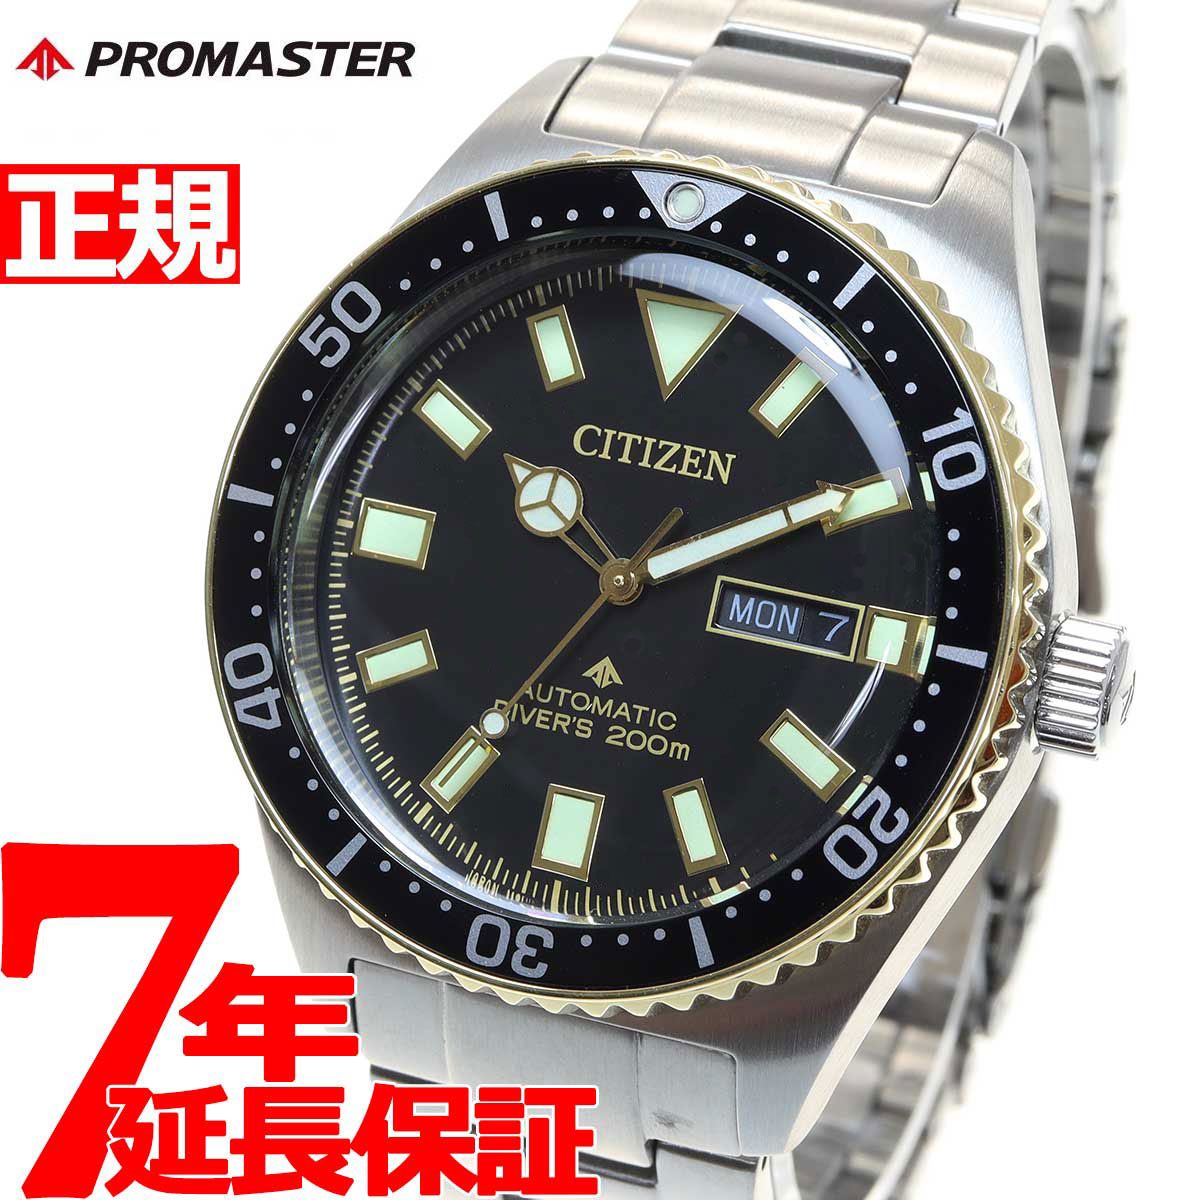 シチズン プロマスター 腕時計（メンズ） シチズン プロマスター マリン CITIZEN PROMASTER MARINE メカニカル ダイバー 200m 自動巻き 機械式 腕時計 メンズ NY0125-83E